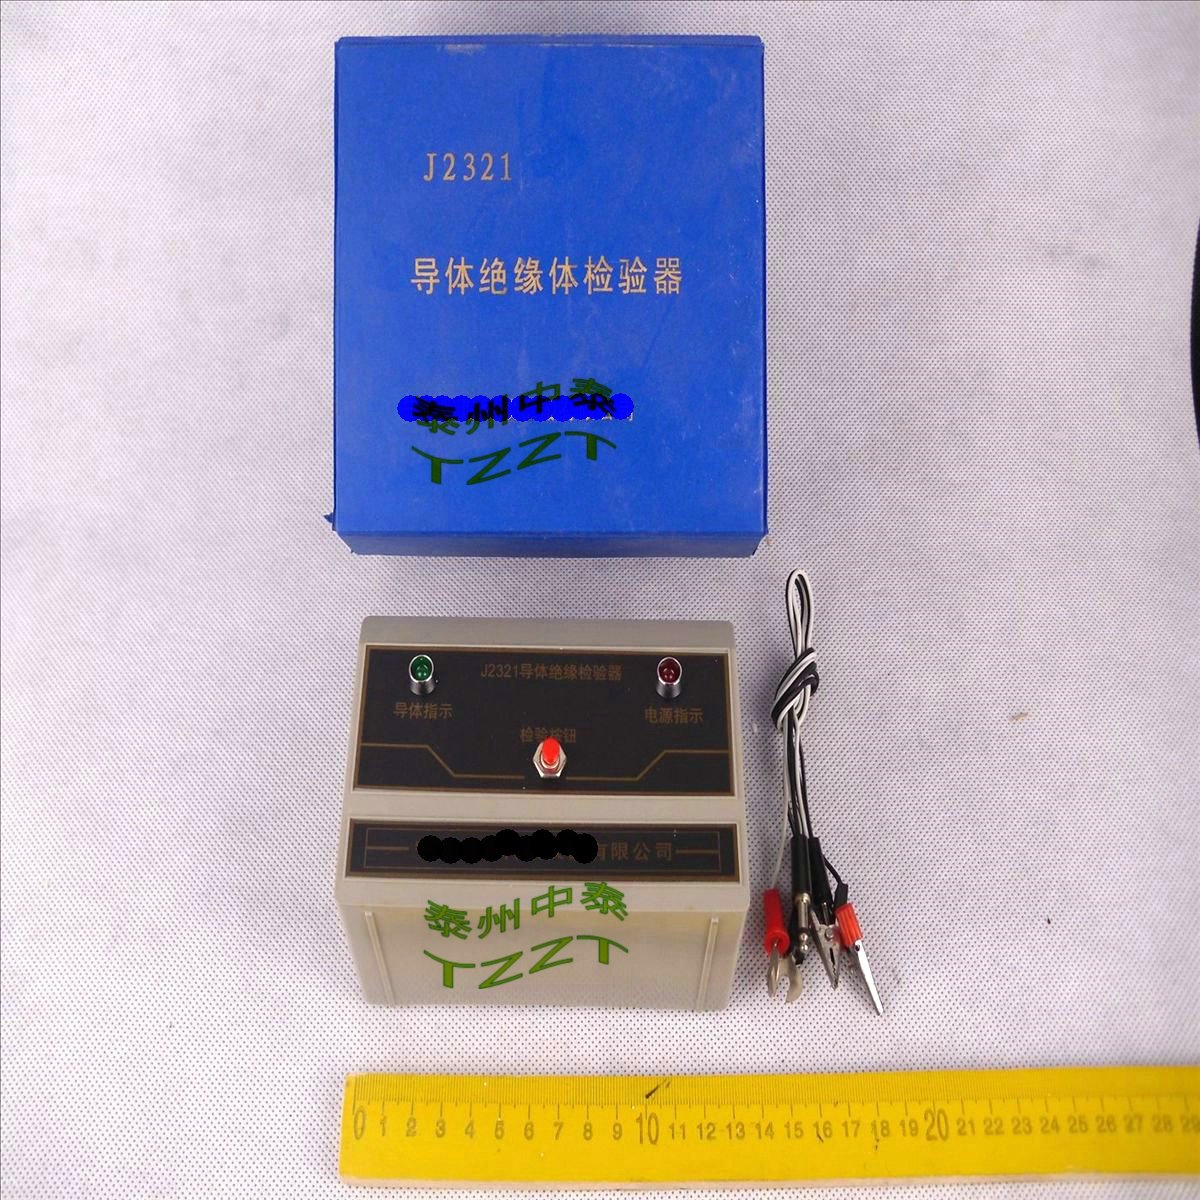 導體絕緣體檢驗器 J2321 電學物理實驗器材 物理儀器 教學儀器